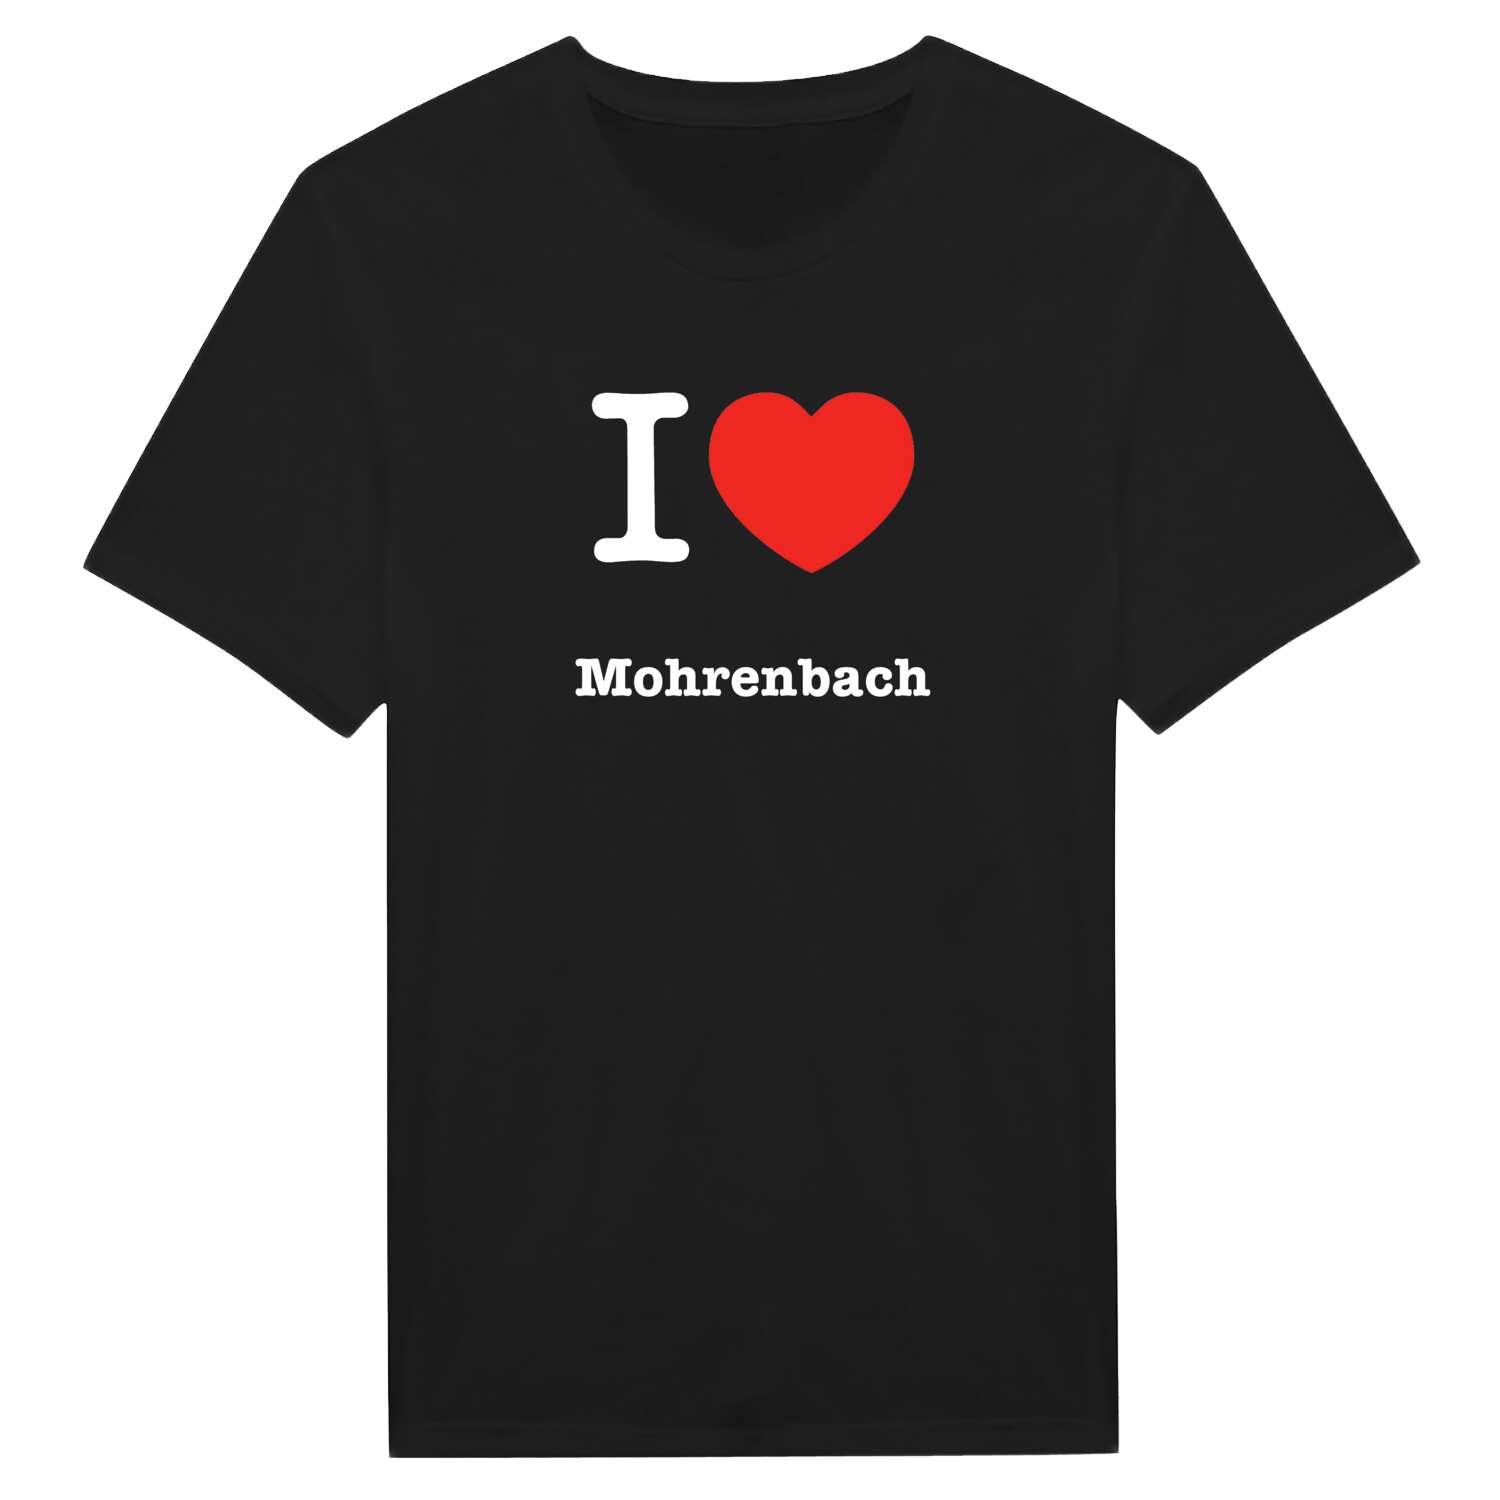 Mohrenbach T-Shirt »I love«